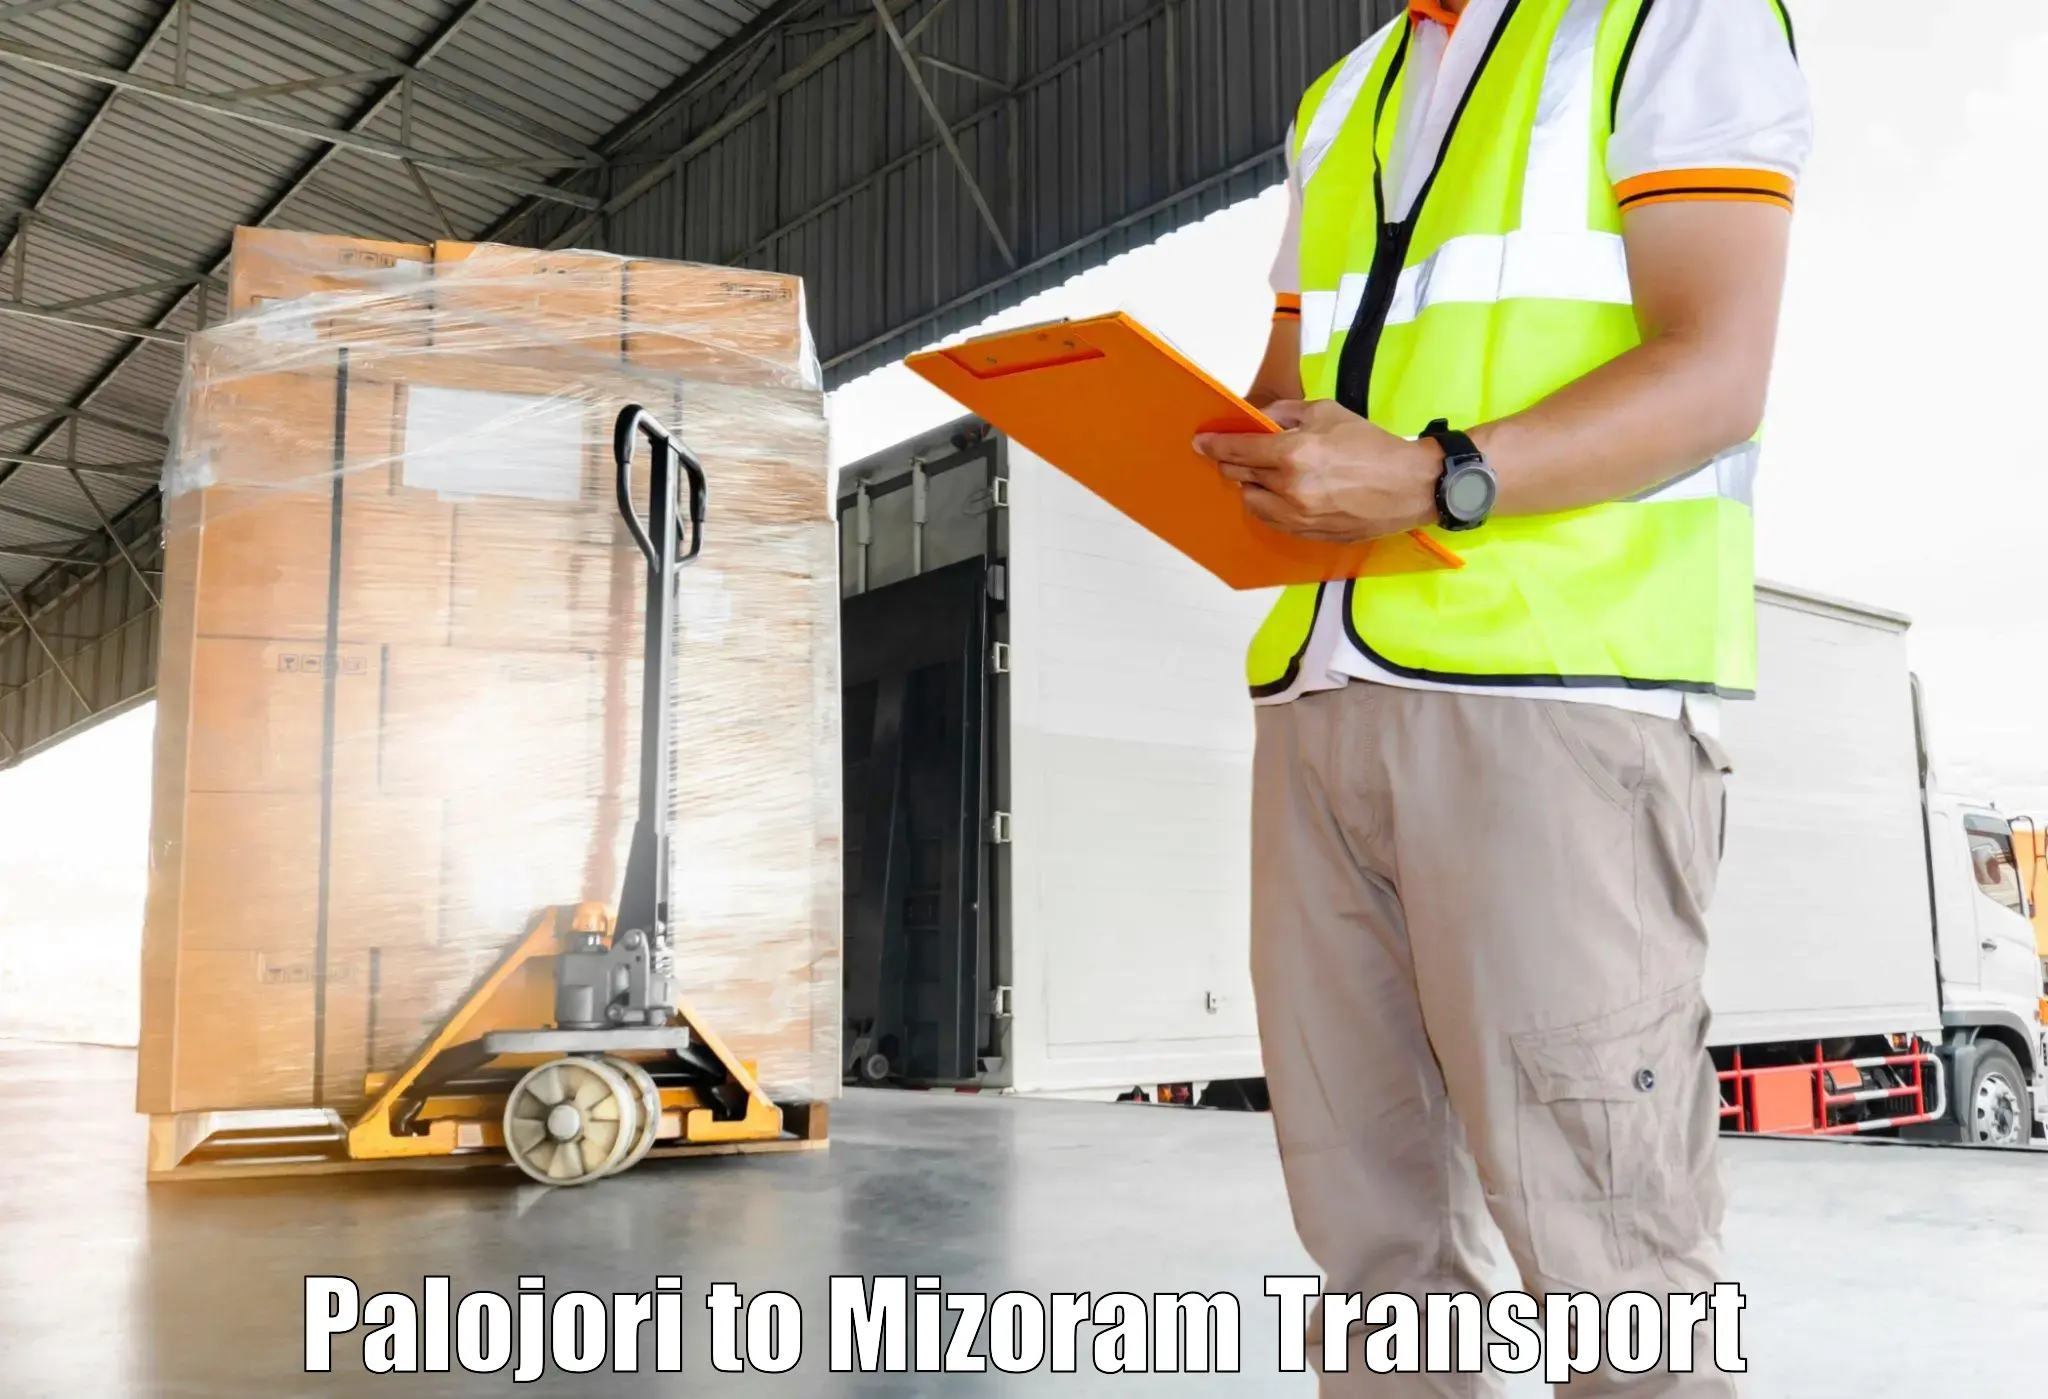 Furniture transport service Palojori to Saiha